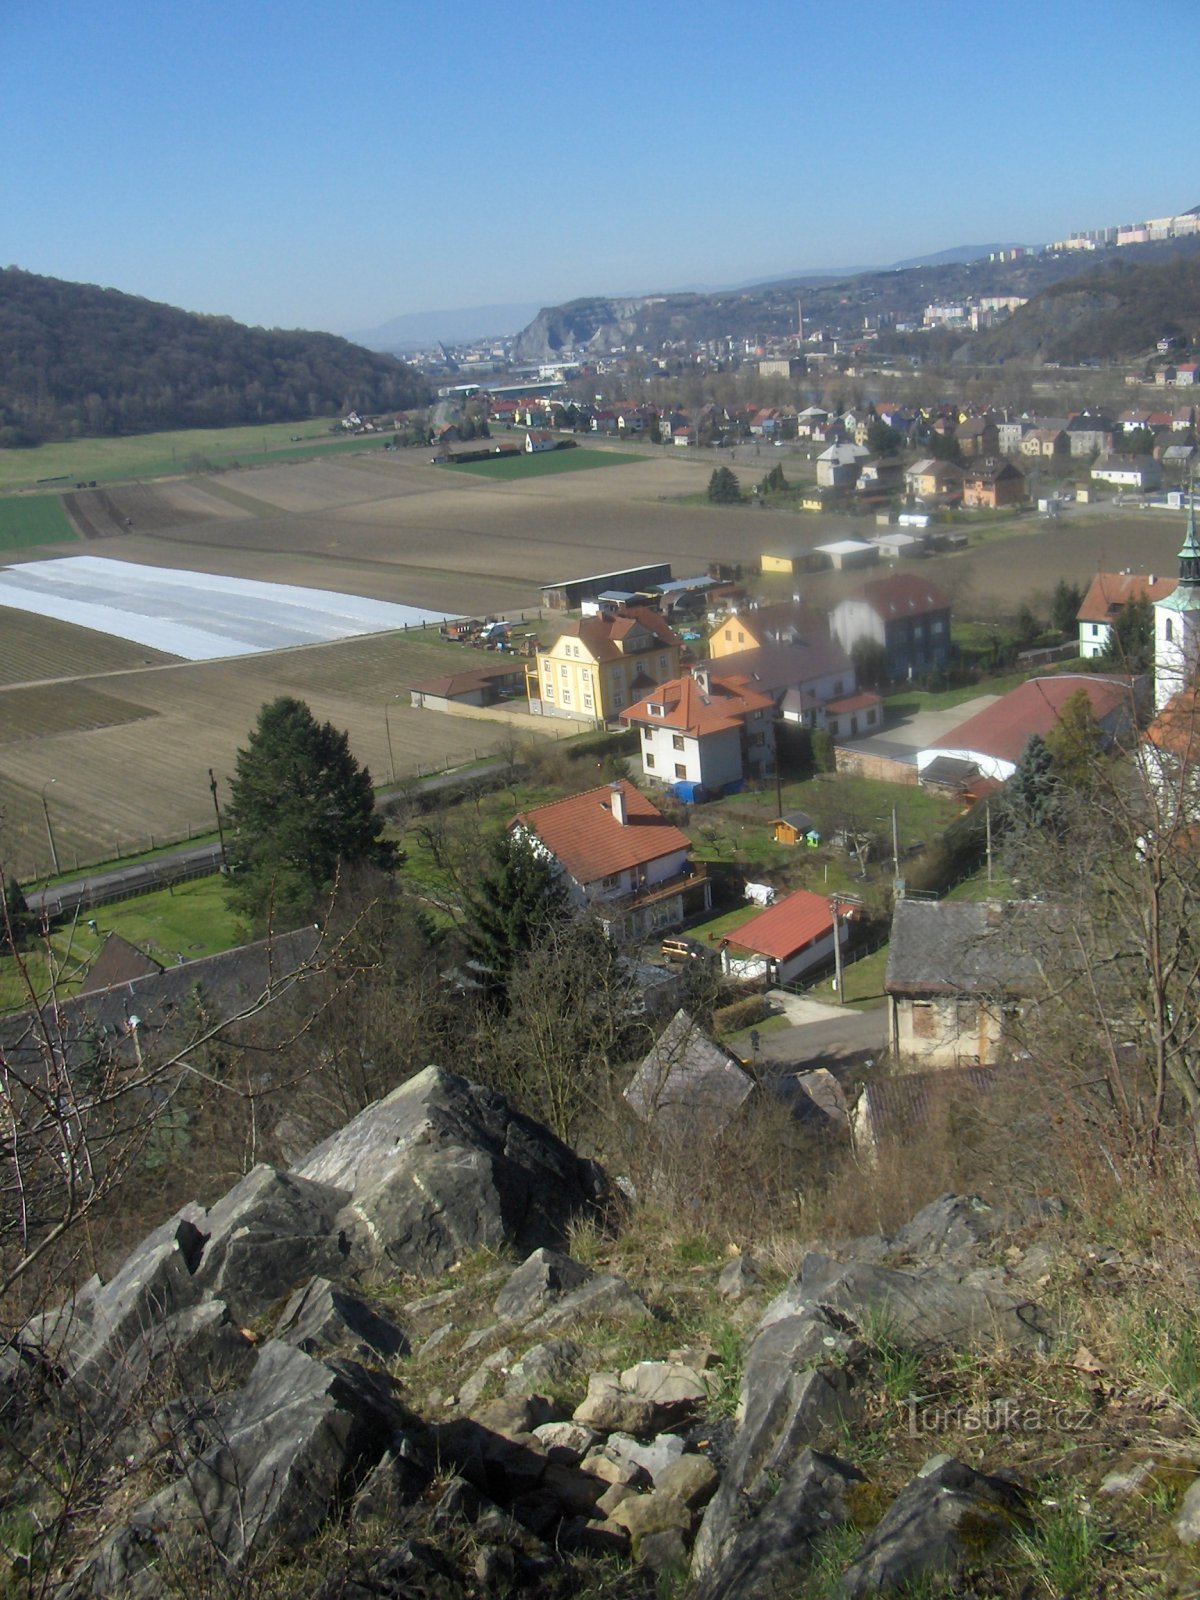 θέα από την άποψη προς το Ústí nad Labem